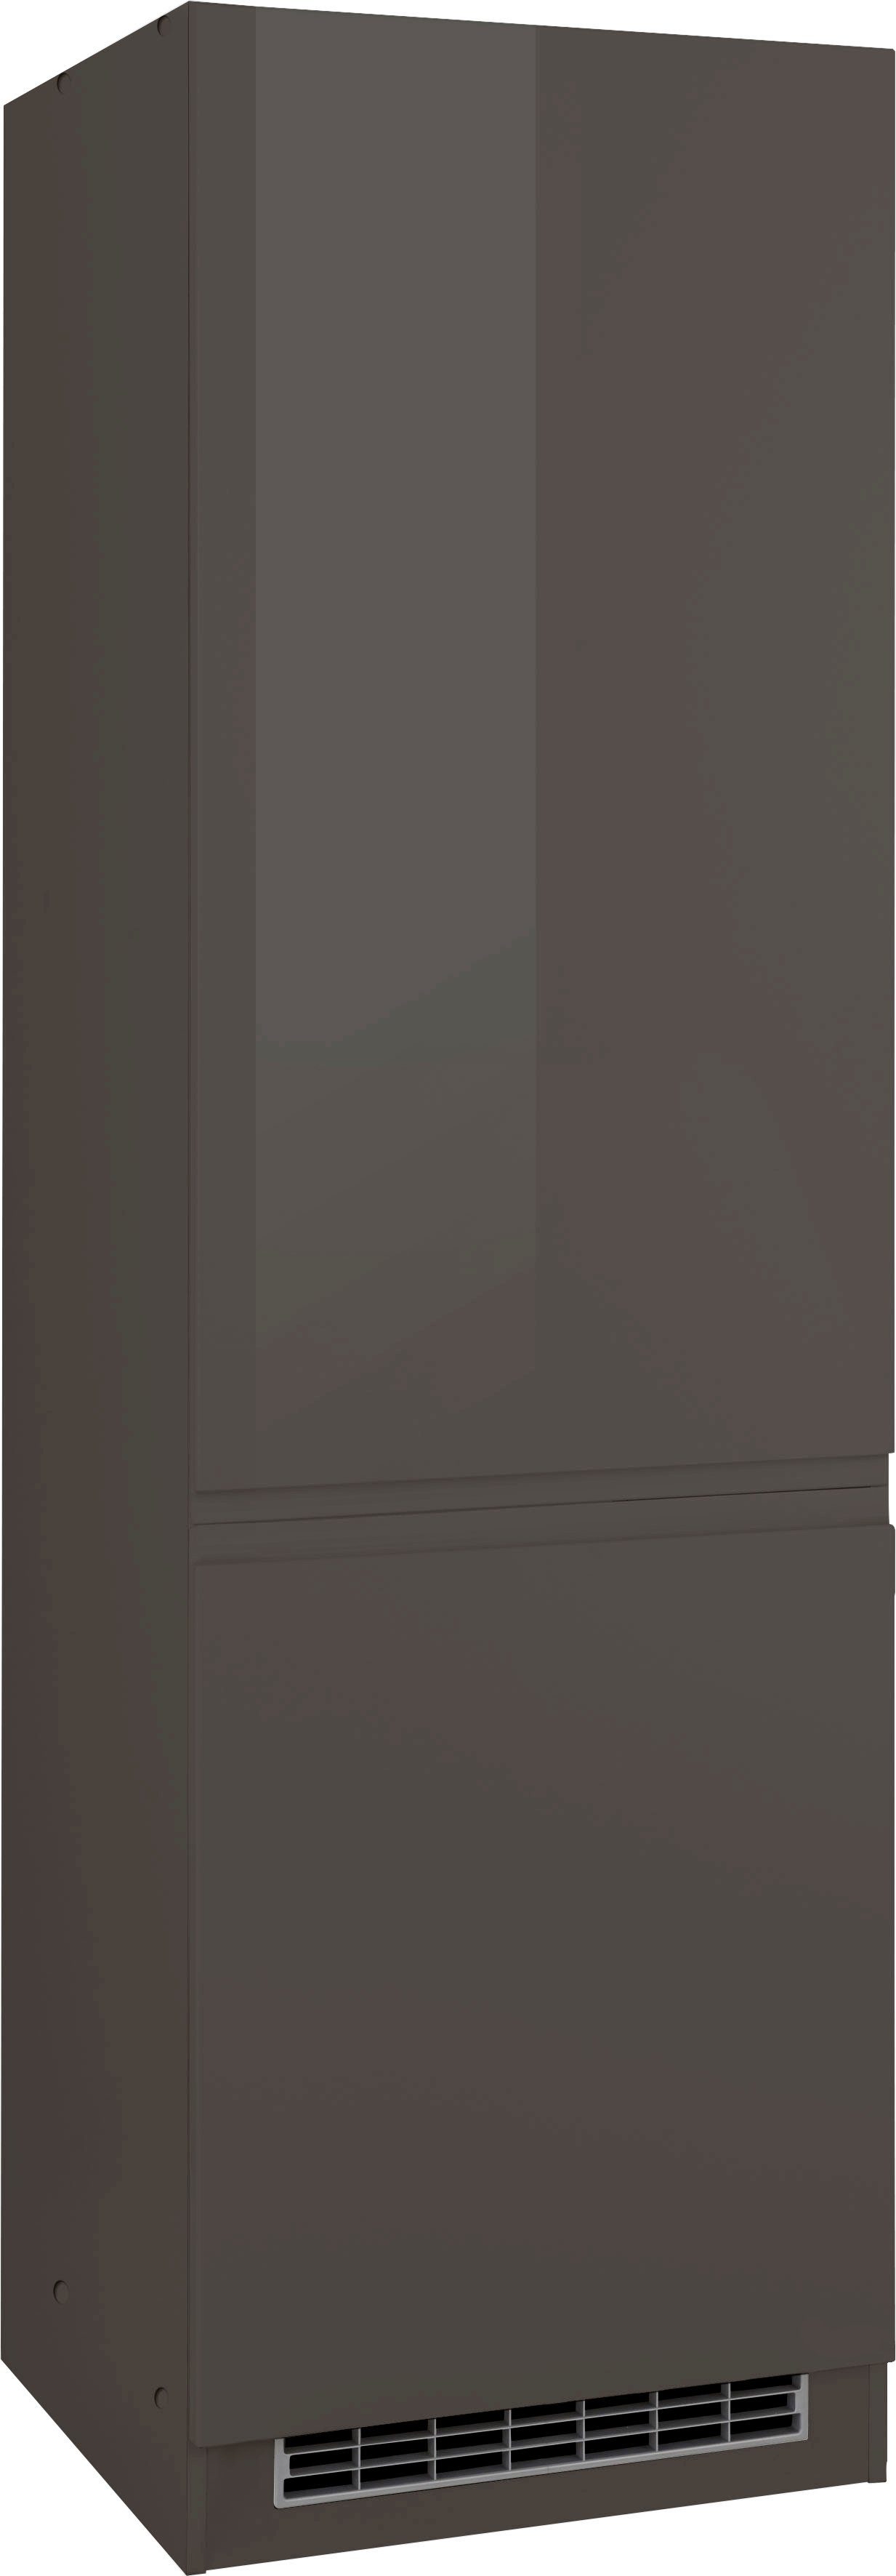 HELD MÖBEL Kühlumbauschrank Virginia 200 cm hoch, 60 cm breit, Nische für Kühlschrank B/H/T: 56/178/55 cm grau Hochglanz | grafit | Umbauschränke